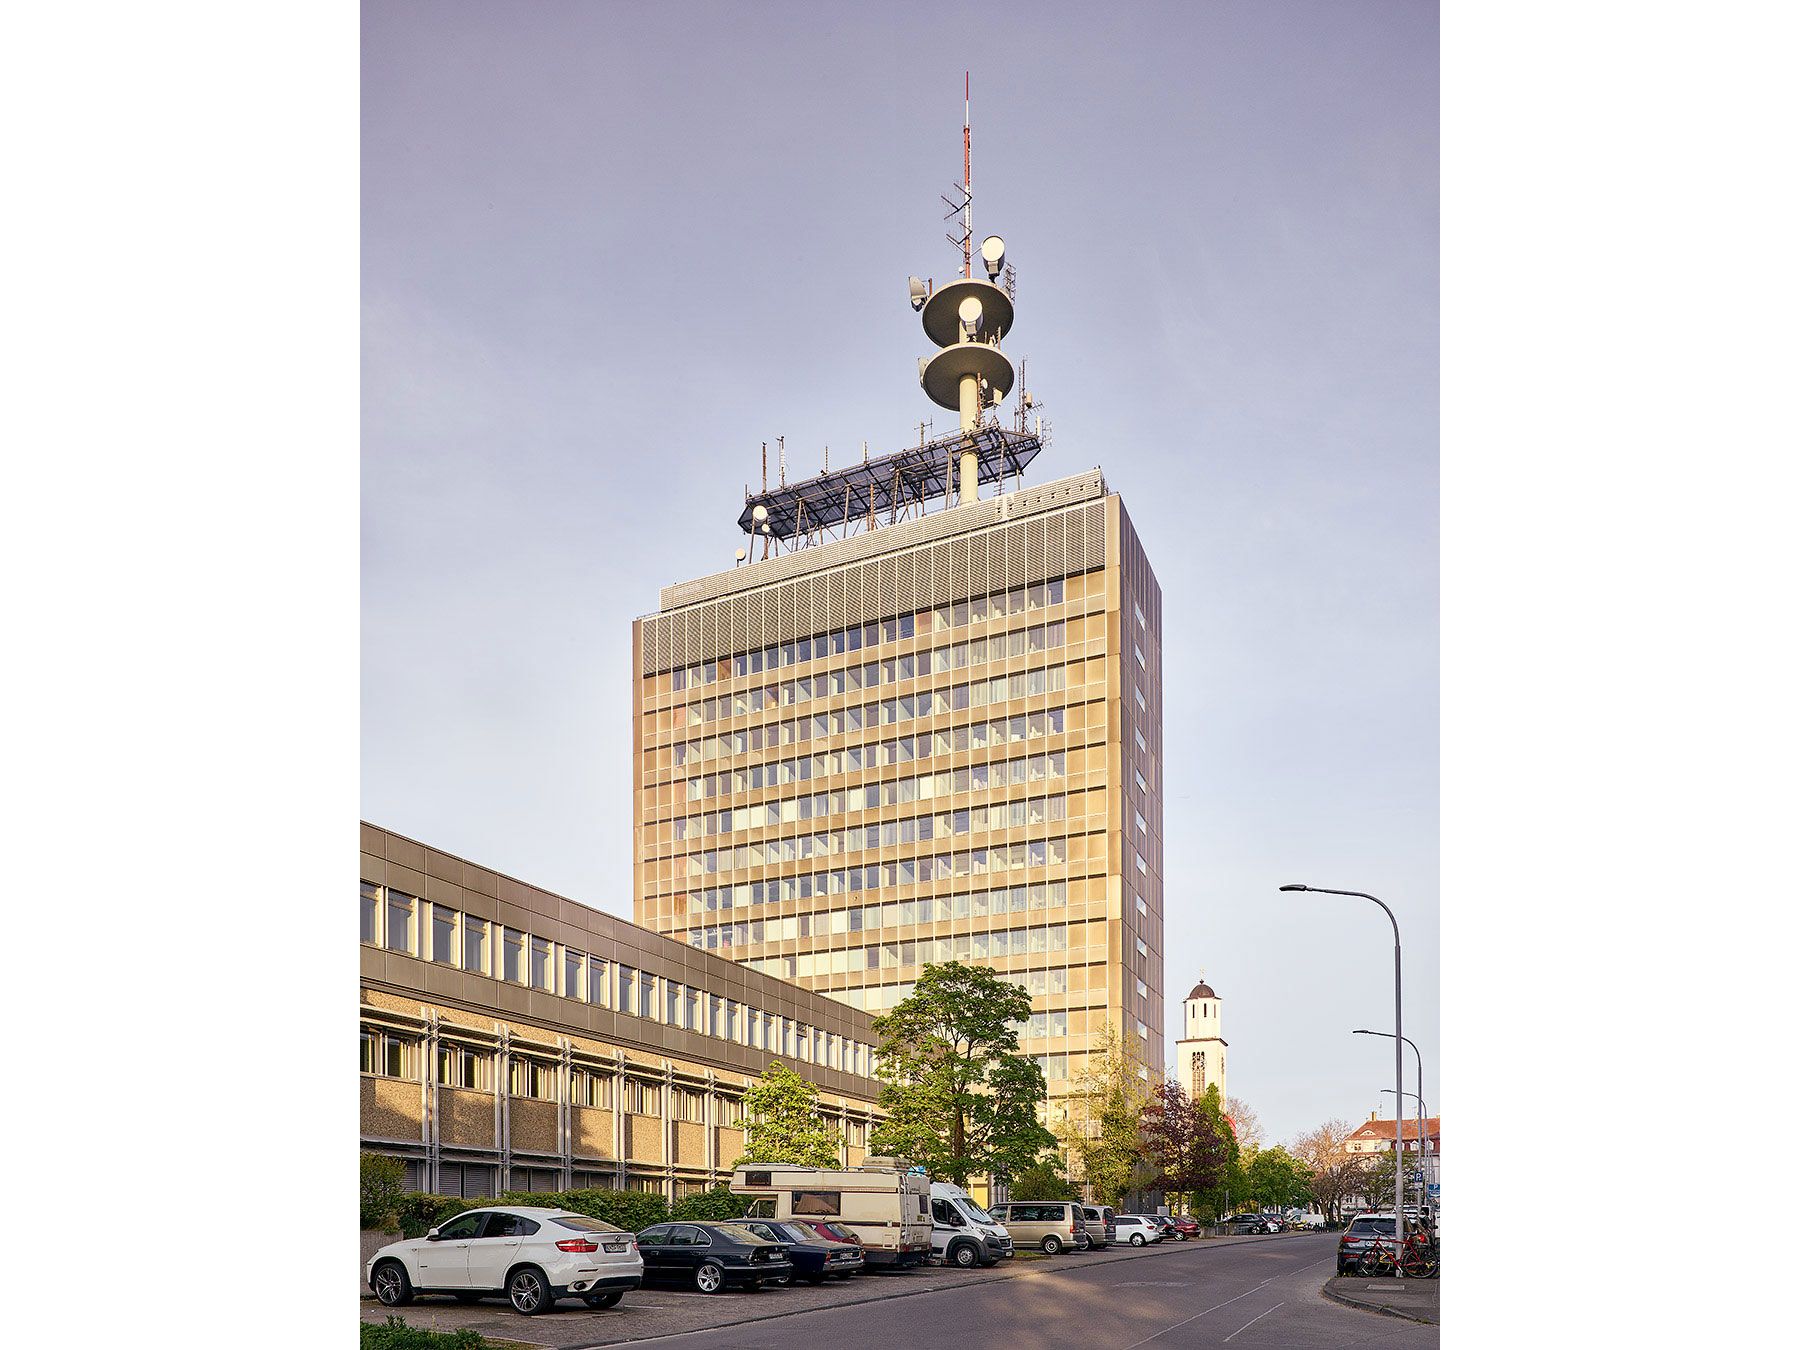 Telekom Umbau Konstanz | © Helmuth Scham BFF, Architektur Fotograf Bodensee